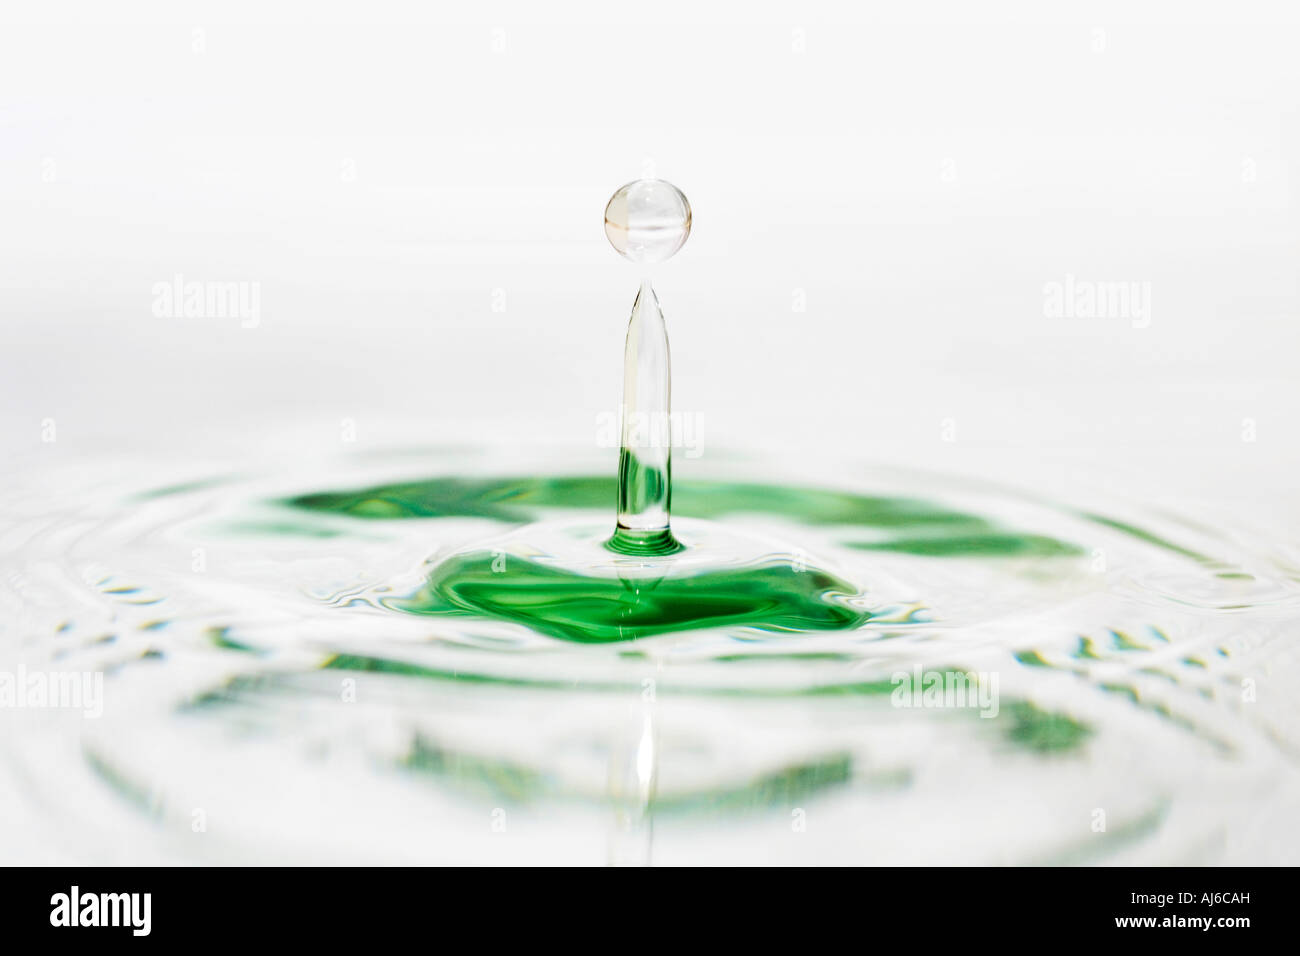 Gota de agua sobre la superficie de espejo de agua blanca Foto de stock